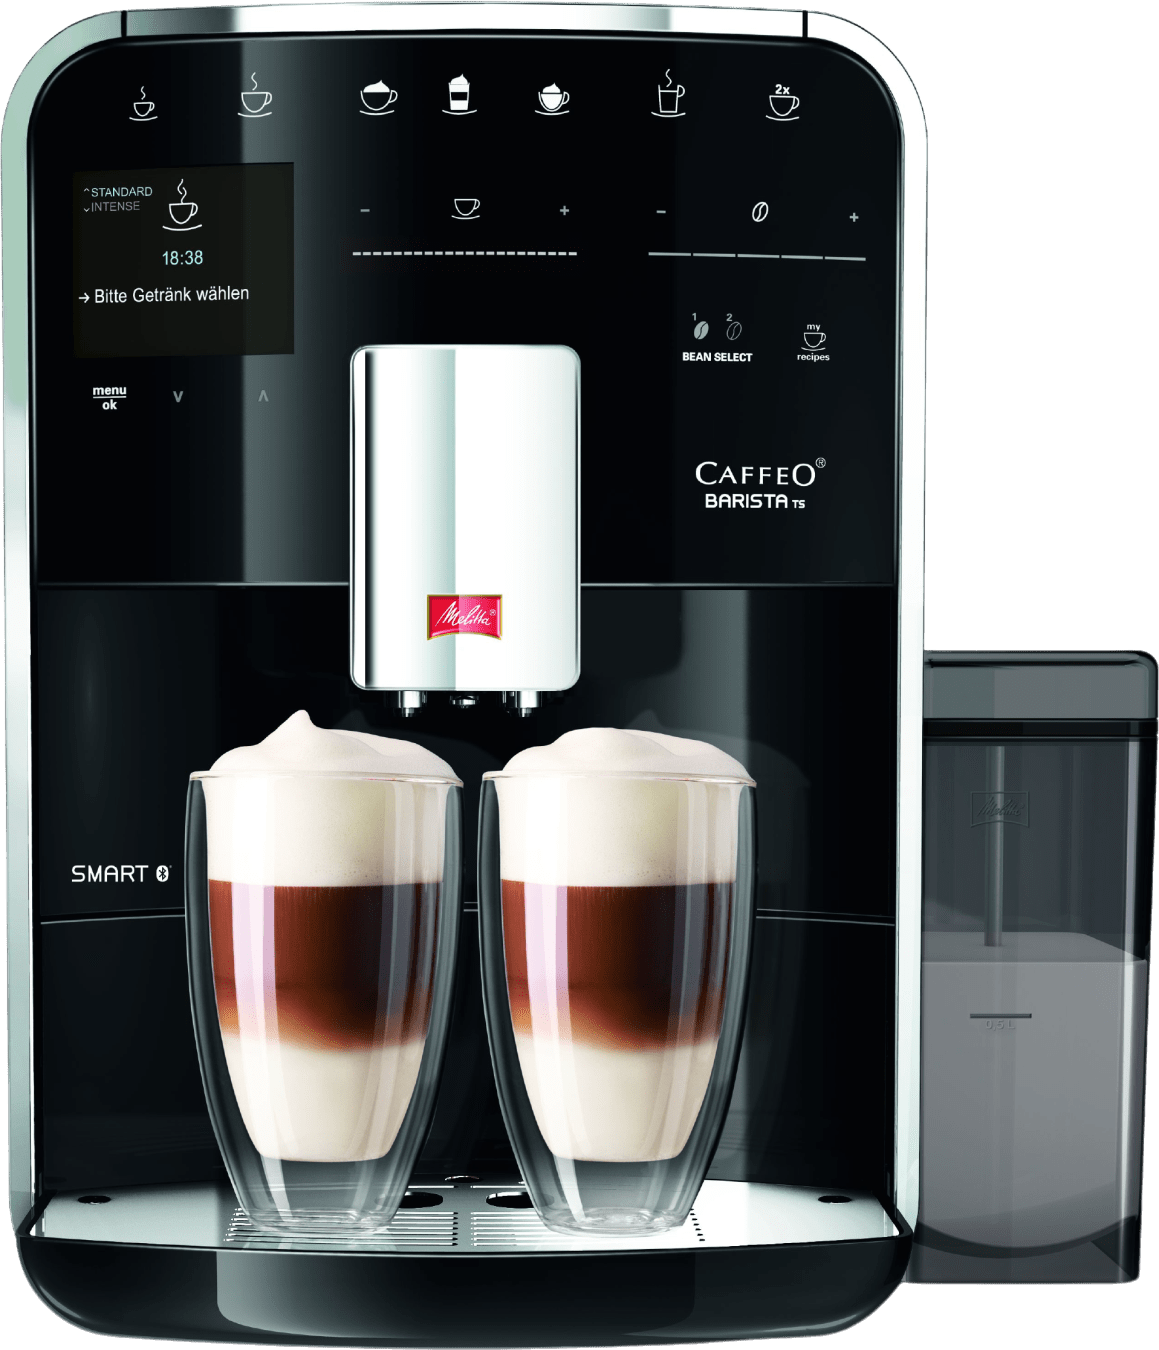 Melitta Volautomatisch koffiezetapparaat Barista TS Smart® F850-102, zwart, 21 koffierecepten & 8 gebruikersprofielen, 2-kamer bonenreservoir